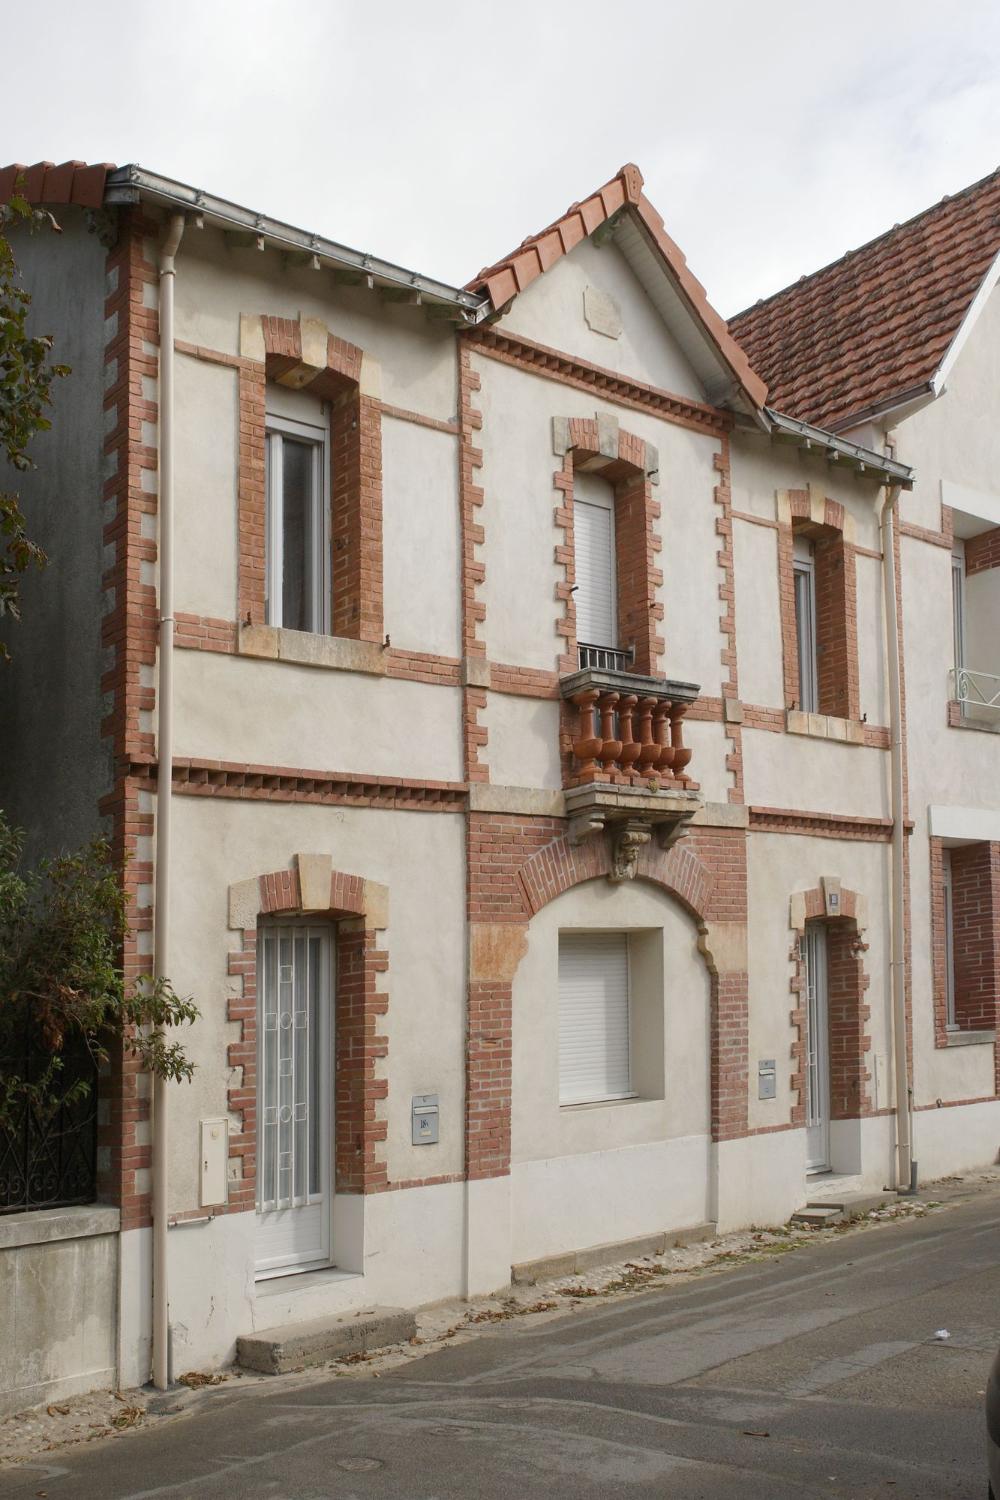 Hôtel de voyageurs dite Pension de famille Agenais,18 bis rue de Noirmoutier